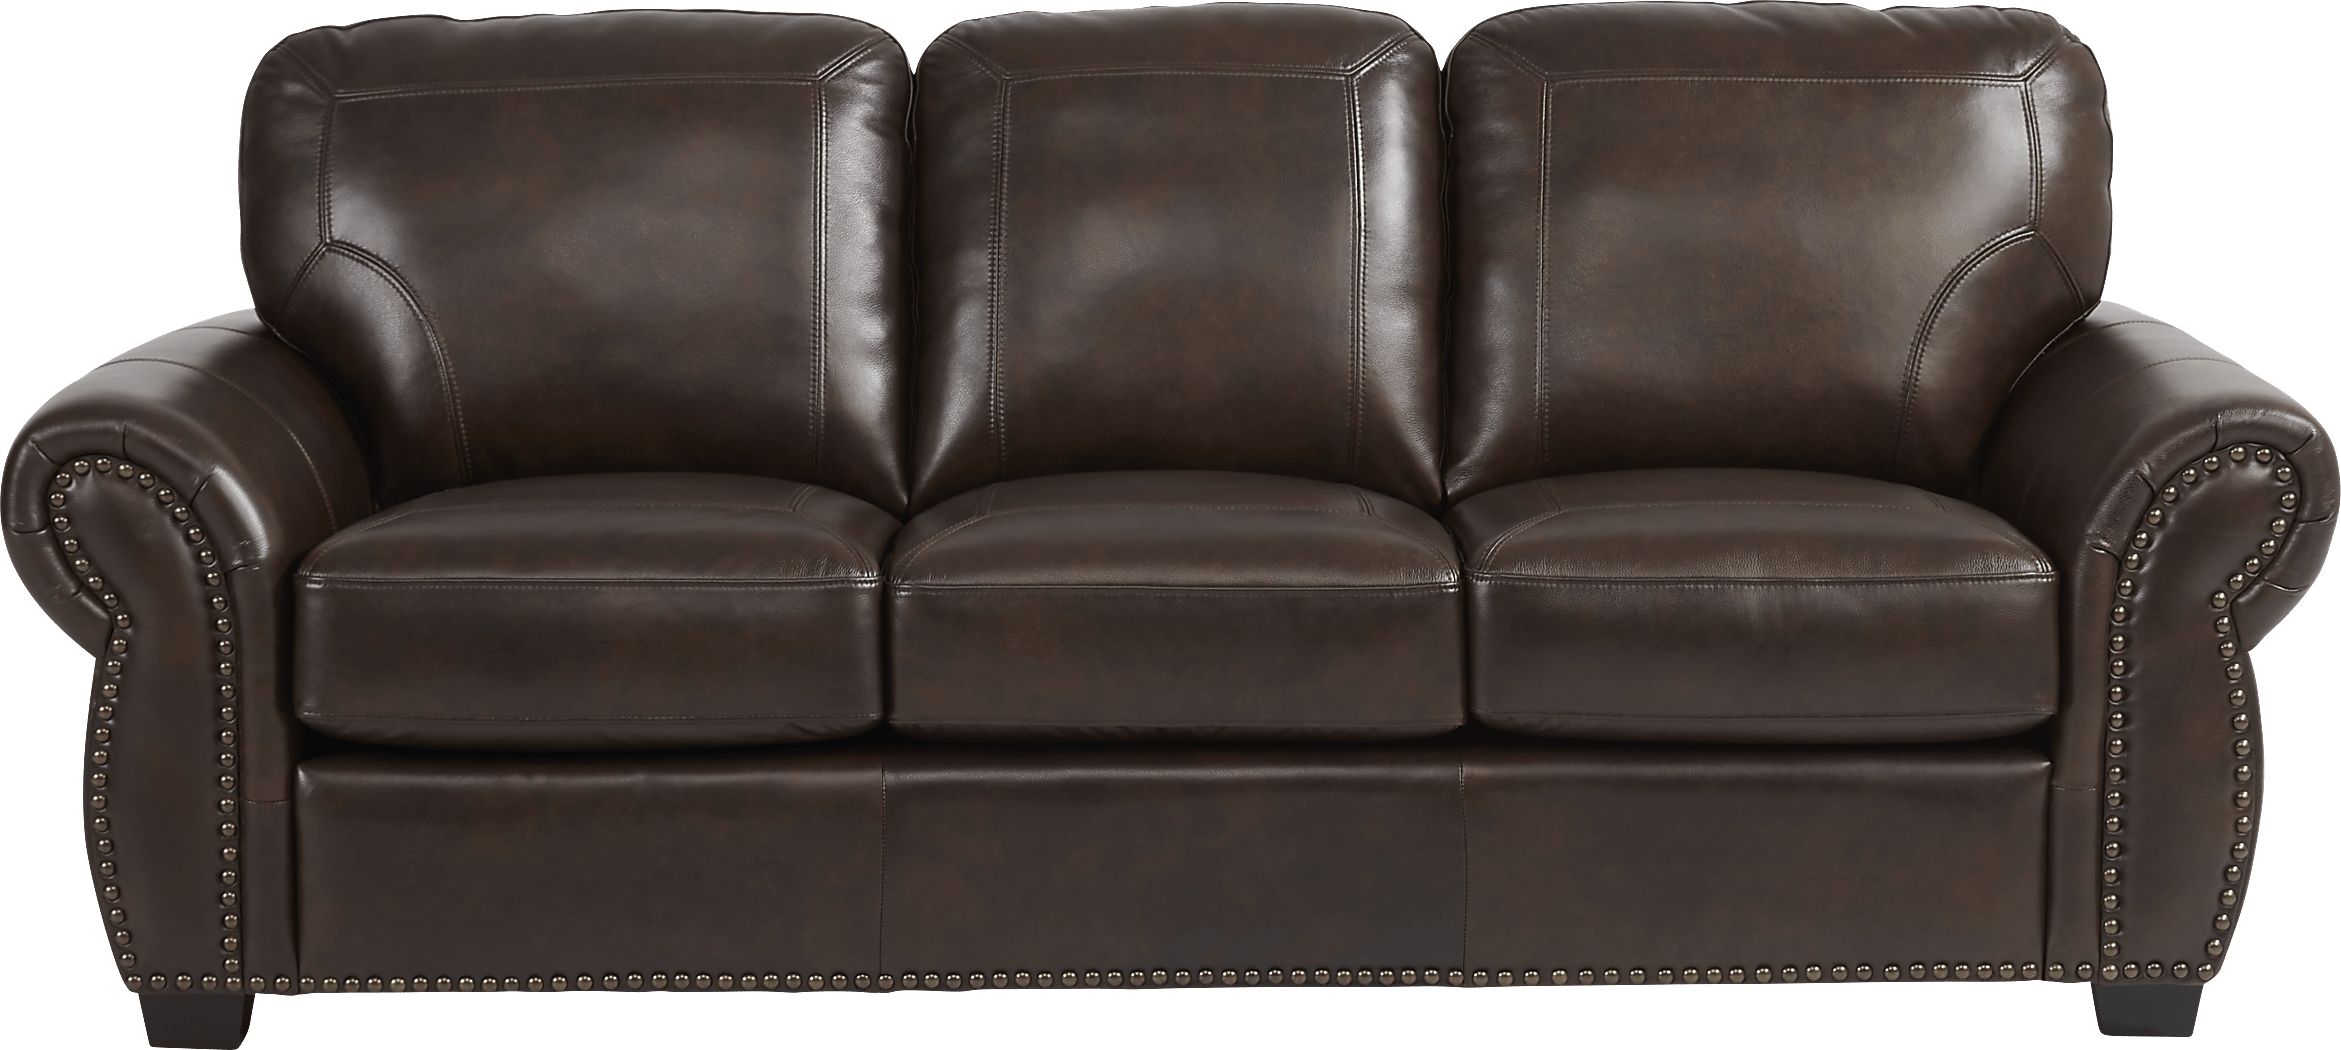 rapallo mahogany leather sofa